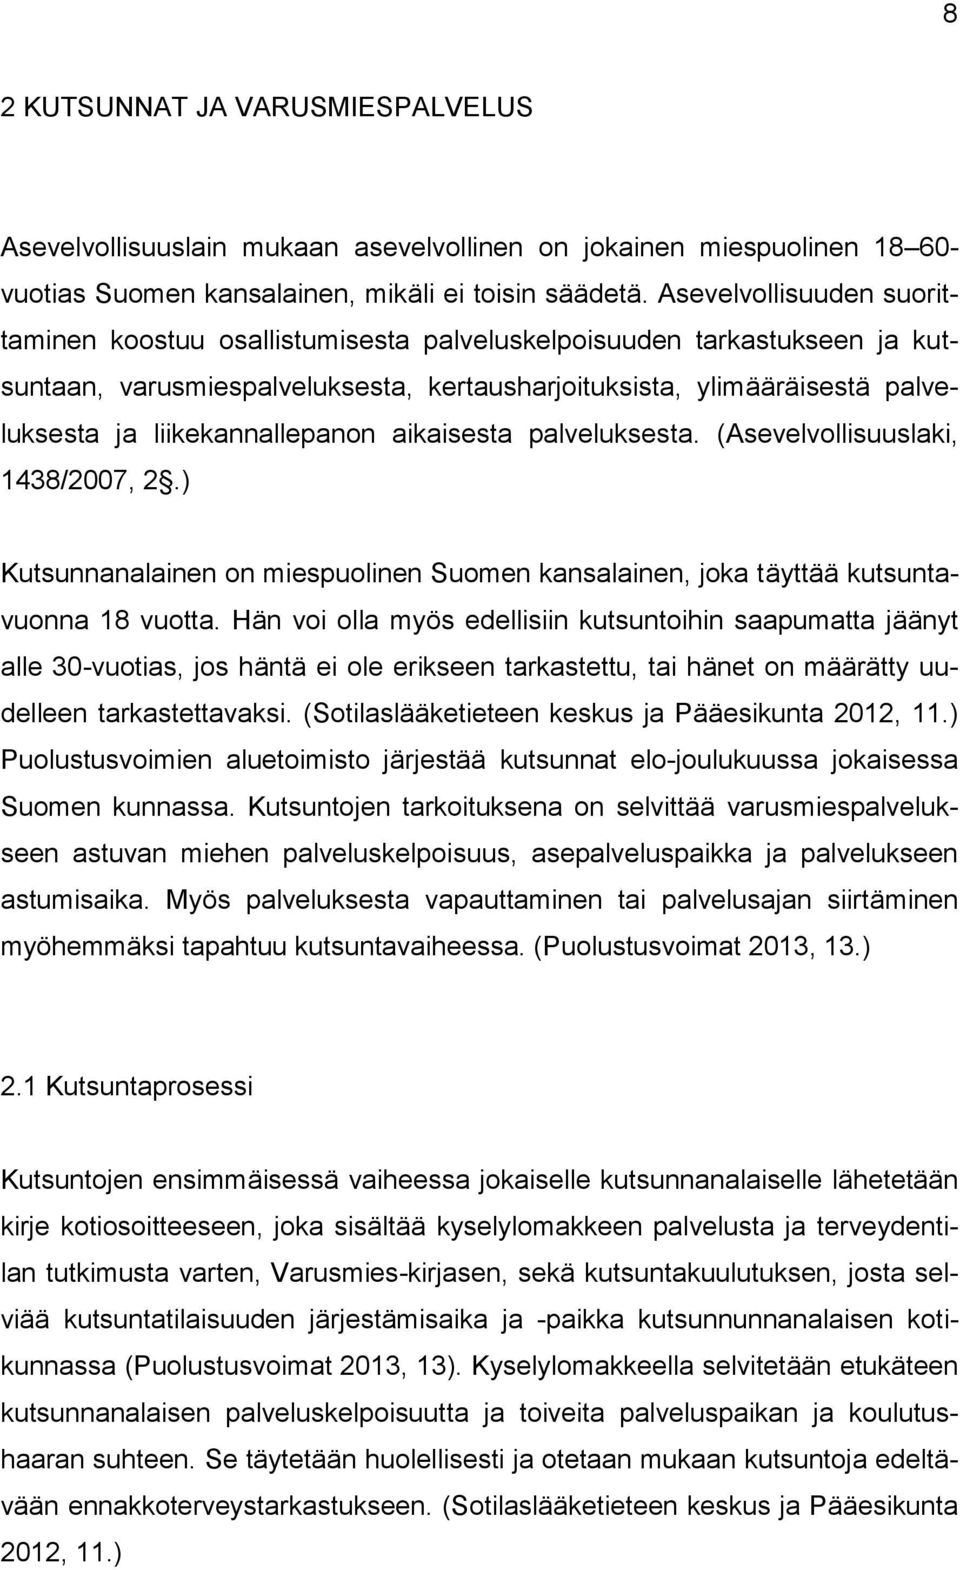 liikekannallepanon aikaisesta palveluksesta. (Asevelvollisuuslaki, 1438/2007, 2.) Kutsunnanalainen on miespuolinen Suomen kansalainen, joka täyttää kutsuntavuonna 18 vuotta.